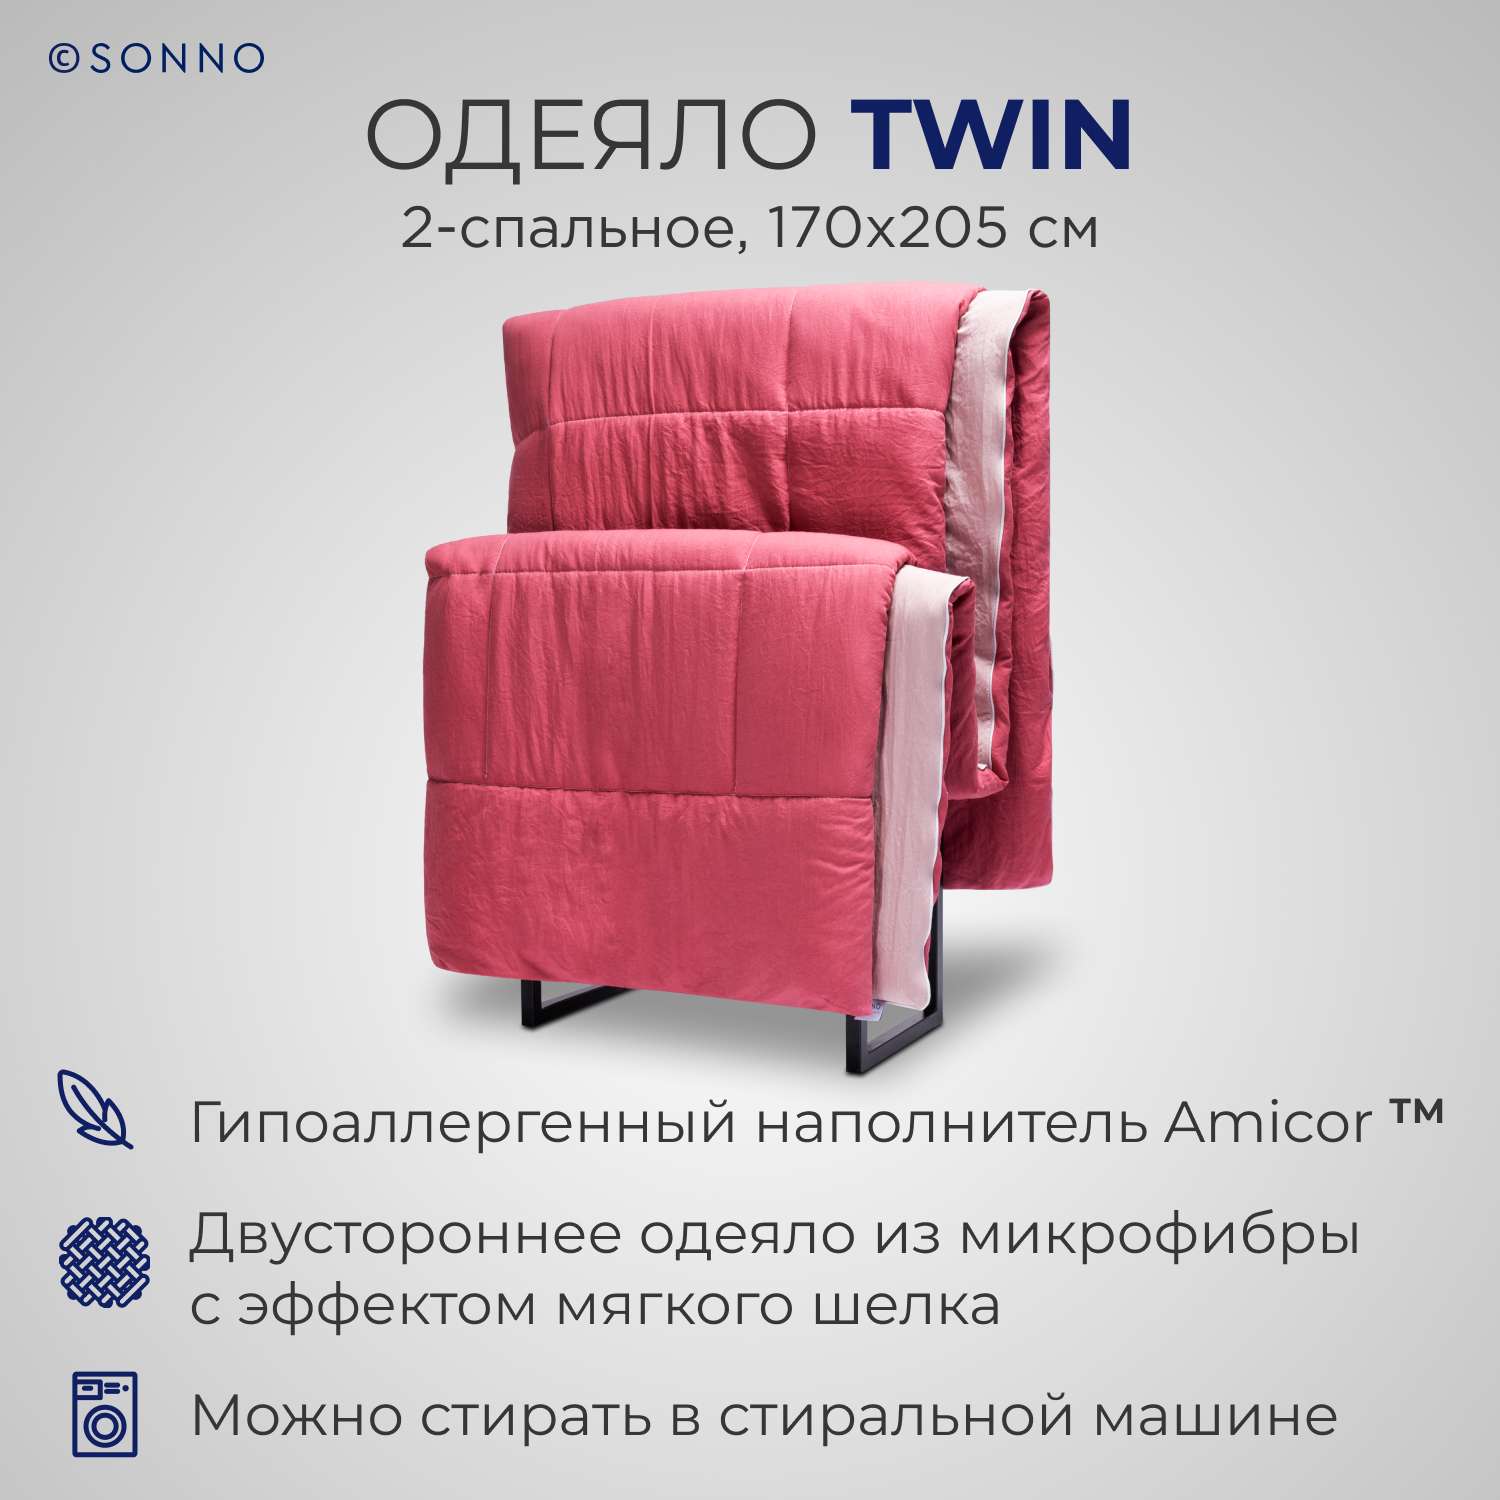 Одеяло SONNO TWIN 2-спальное 170х205 см цвет Розовый малиновый - фото 1